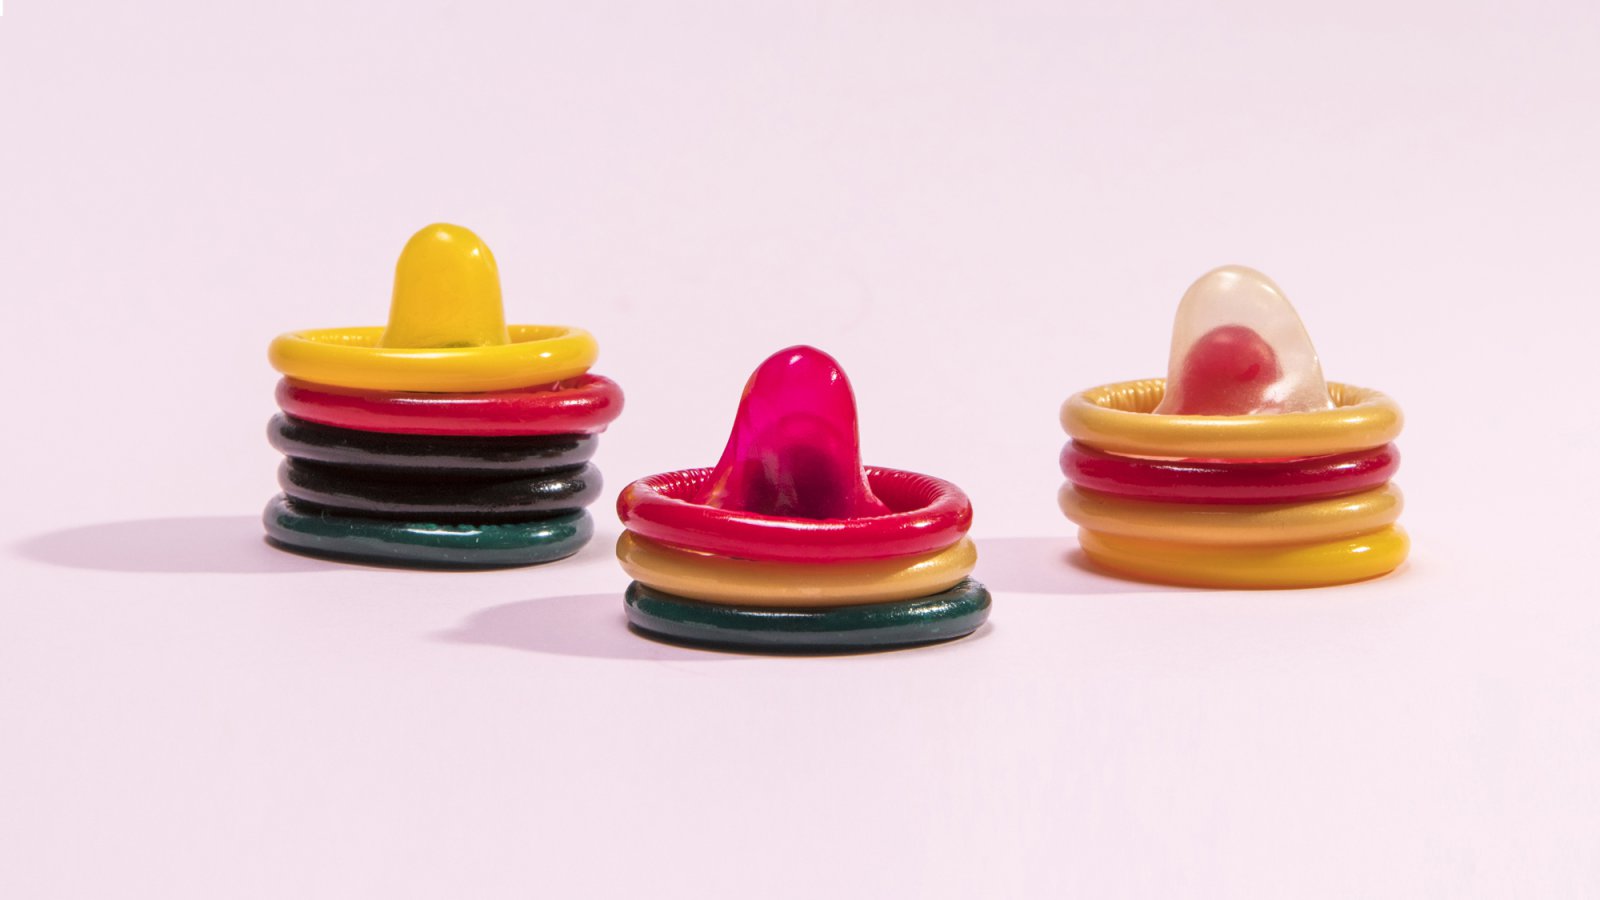 Vše o kondomech 4/4 - zajímavosti ze světa prezervativů